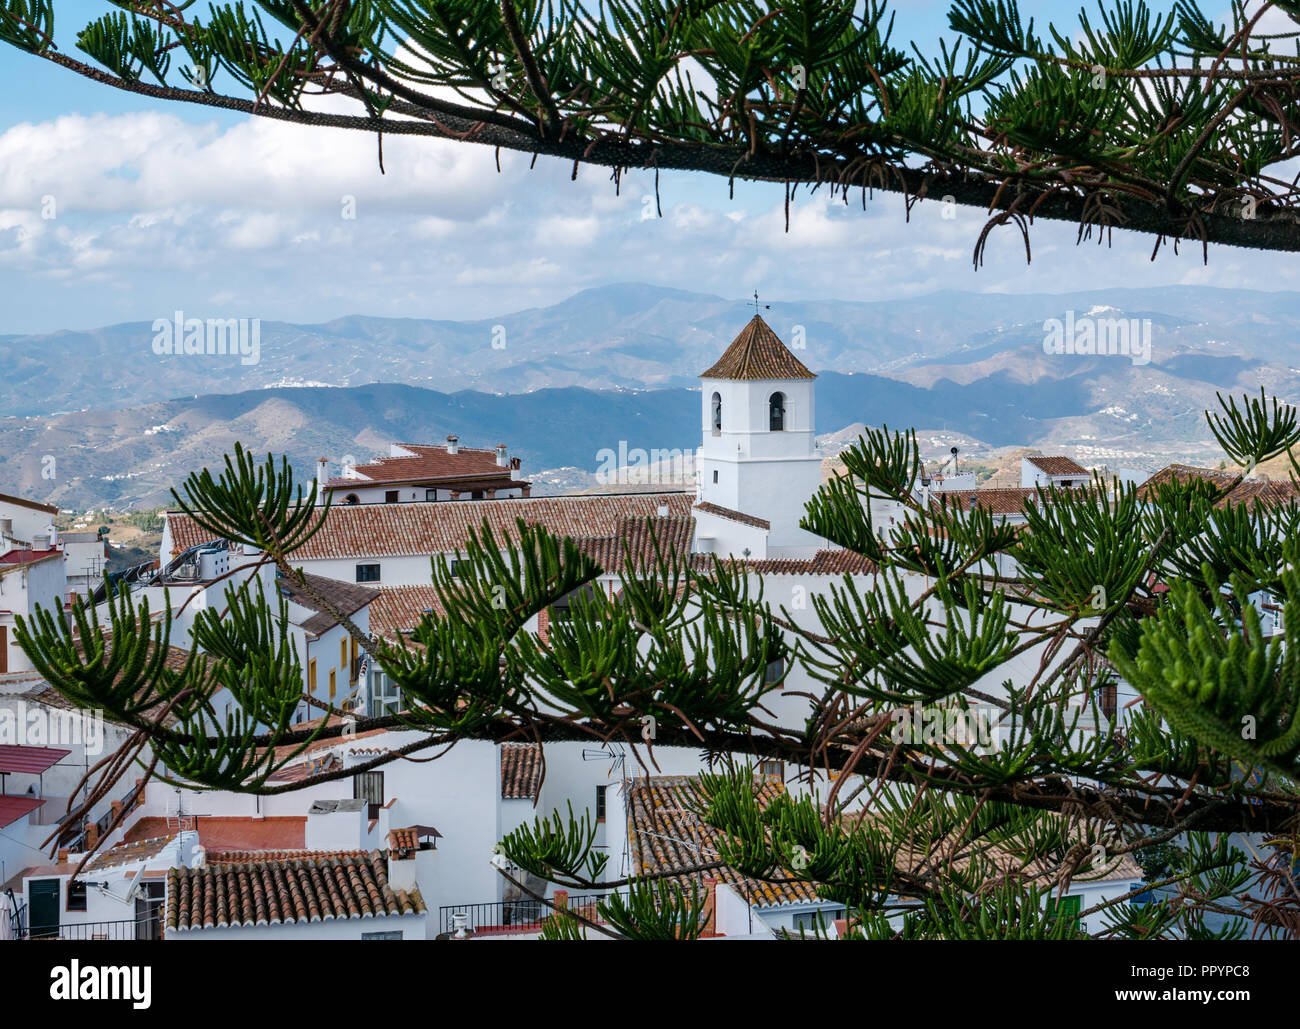 Les toits de tuiles rouges de maisons blanches et clocher de l'église, Canillas de Acientuna, route mudéjar, Axarquía, Andalousie, Espagne Banque D'Images